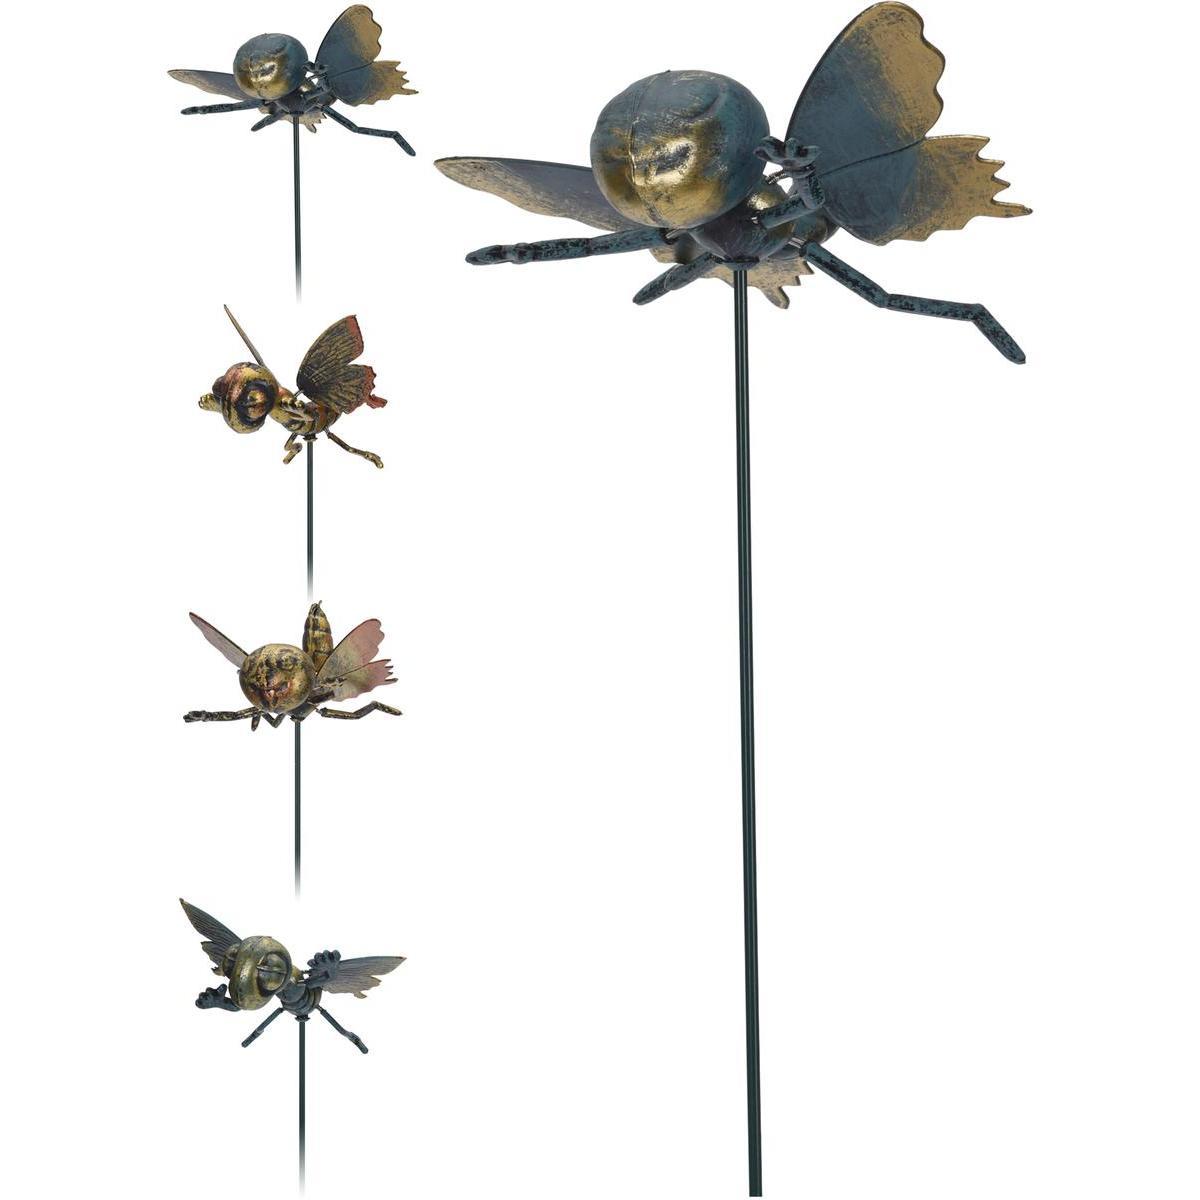 Insecte sur pique en métal - H 67 cm - Différents modèles